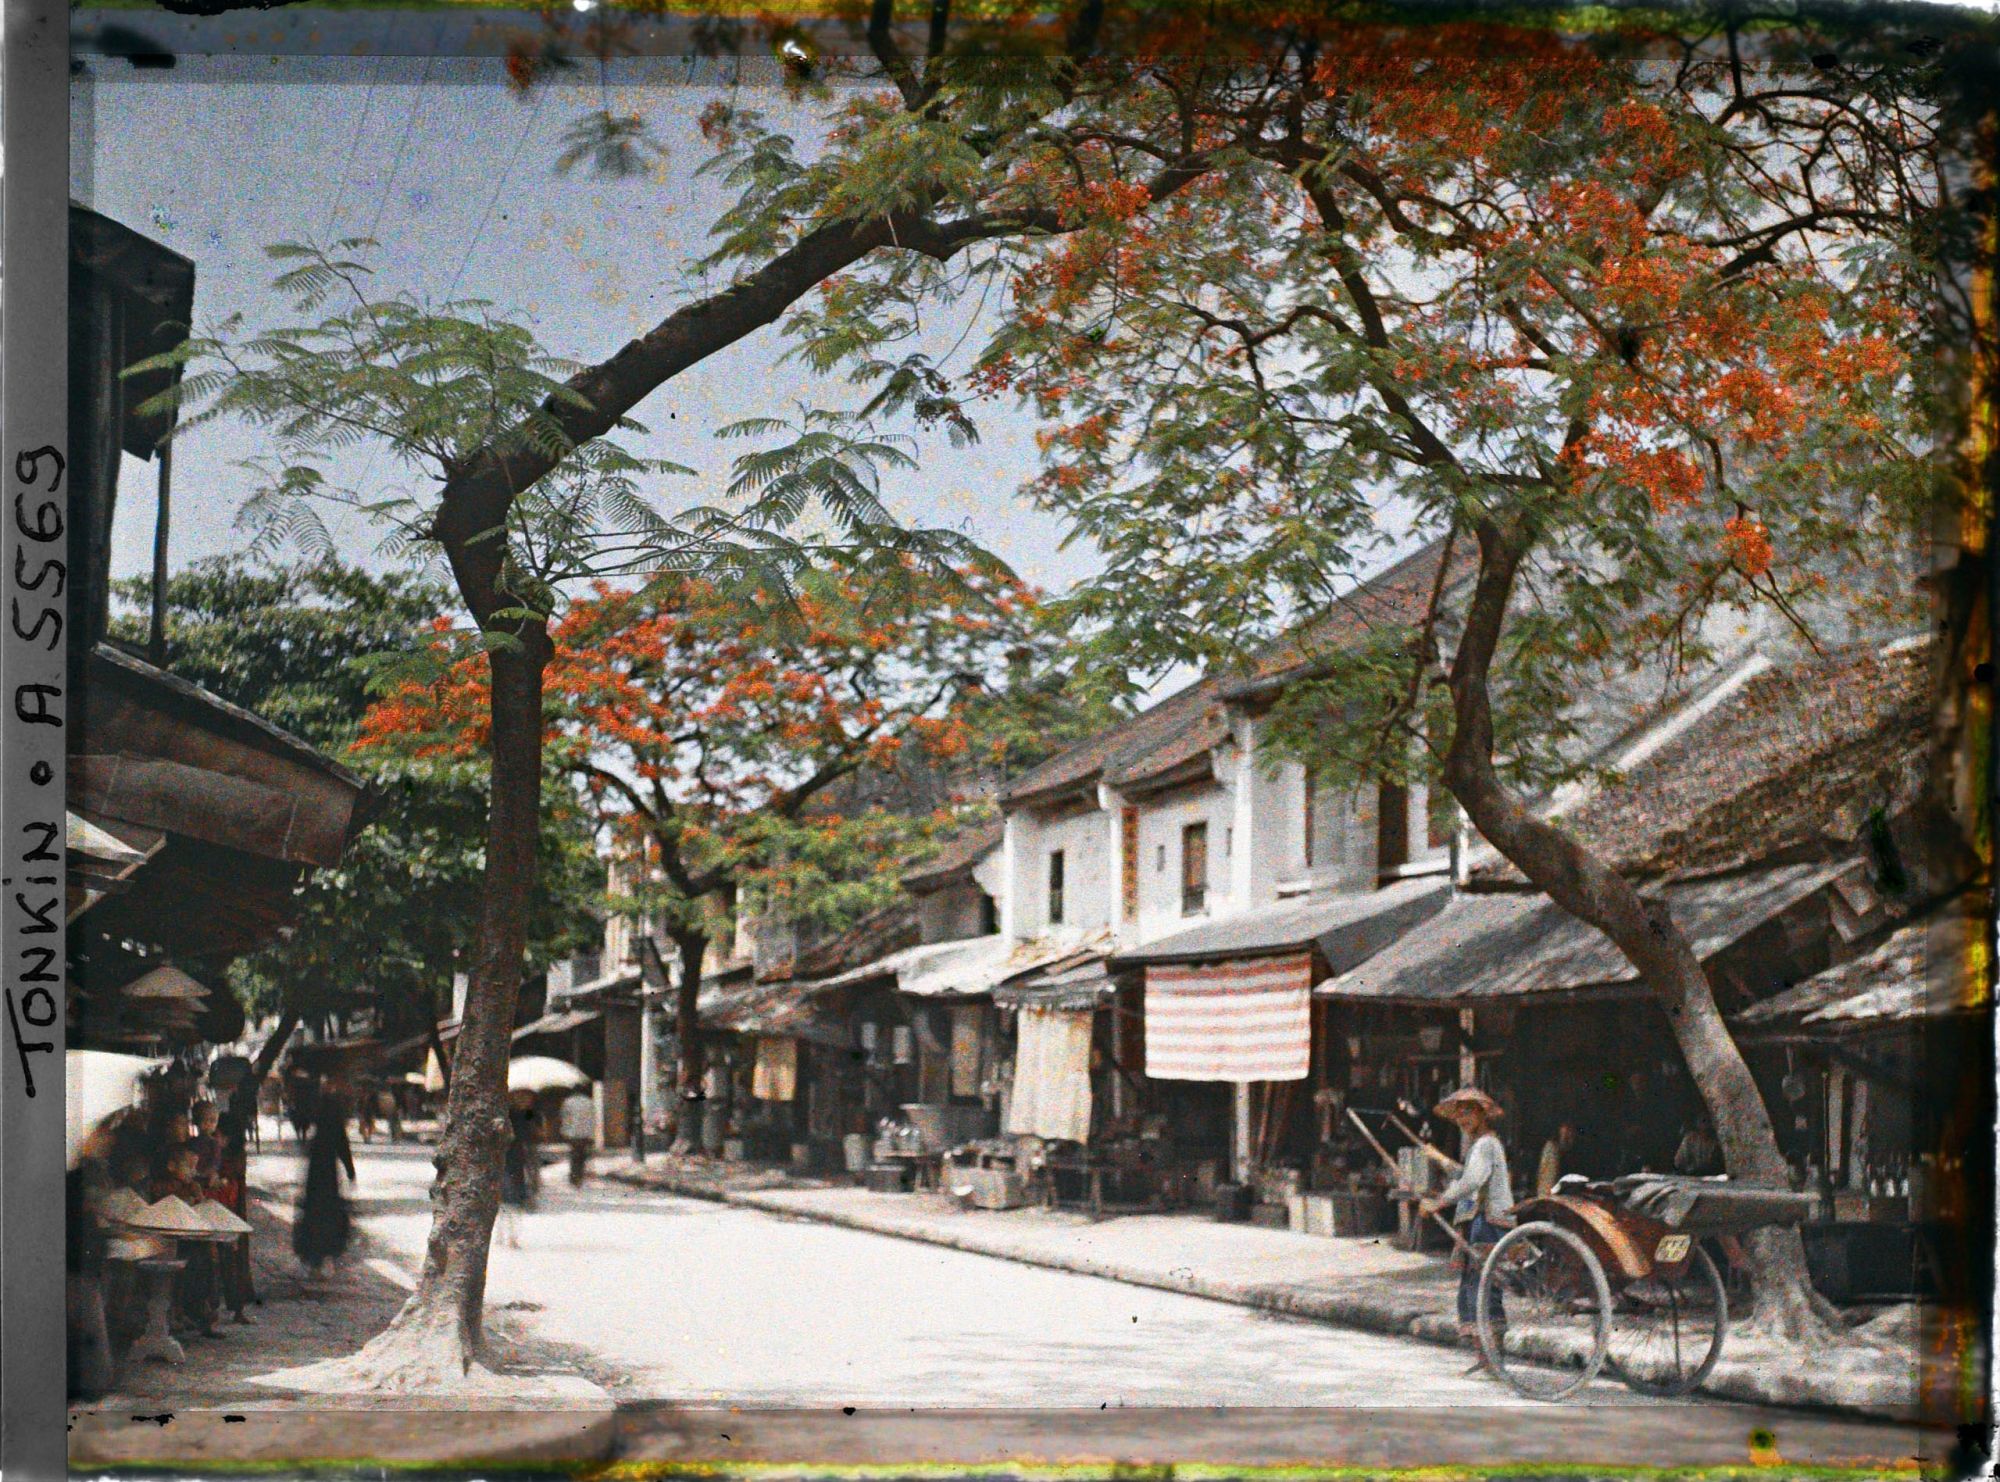 Bảo tàng chứa đến 1.382 tấm ảnh về Việt Nam: Trung thu Hà Nội đầy sắc màu - Ảnh 1.